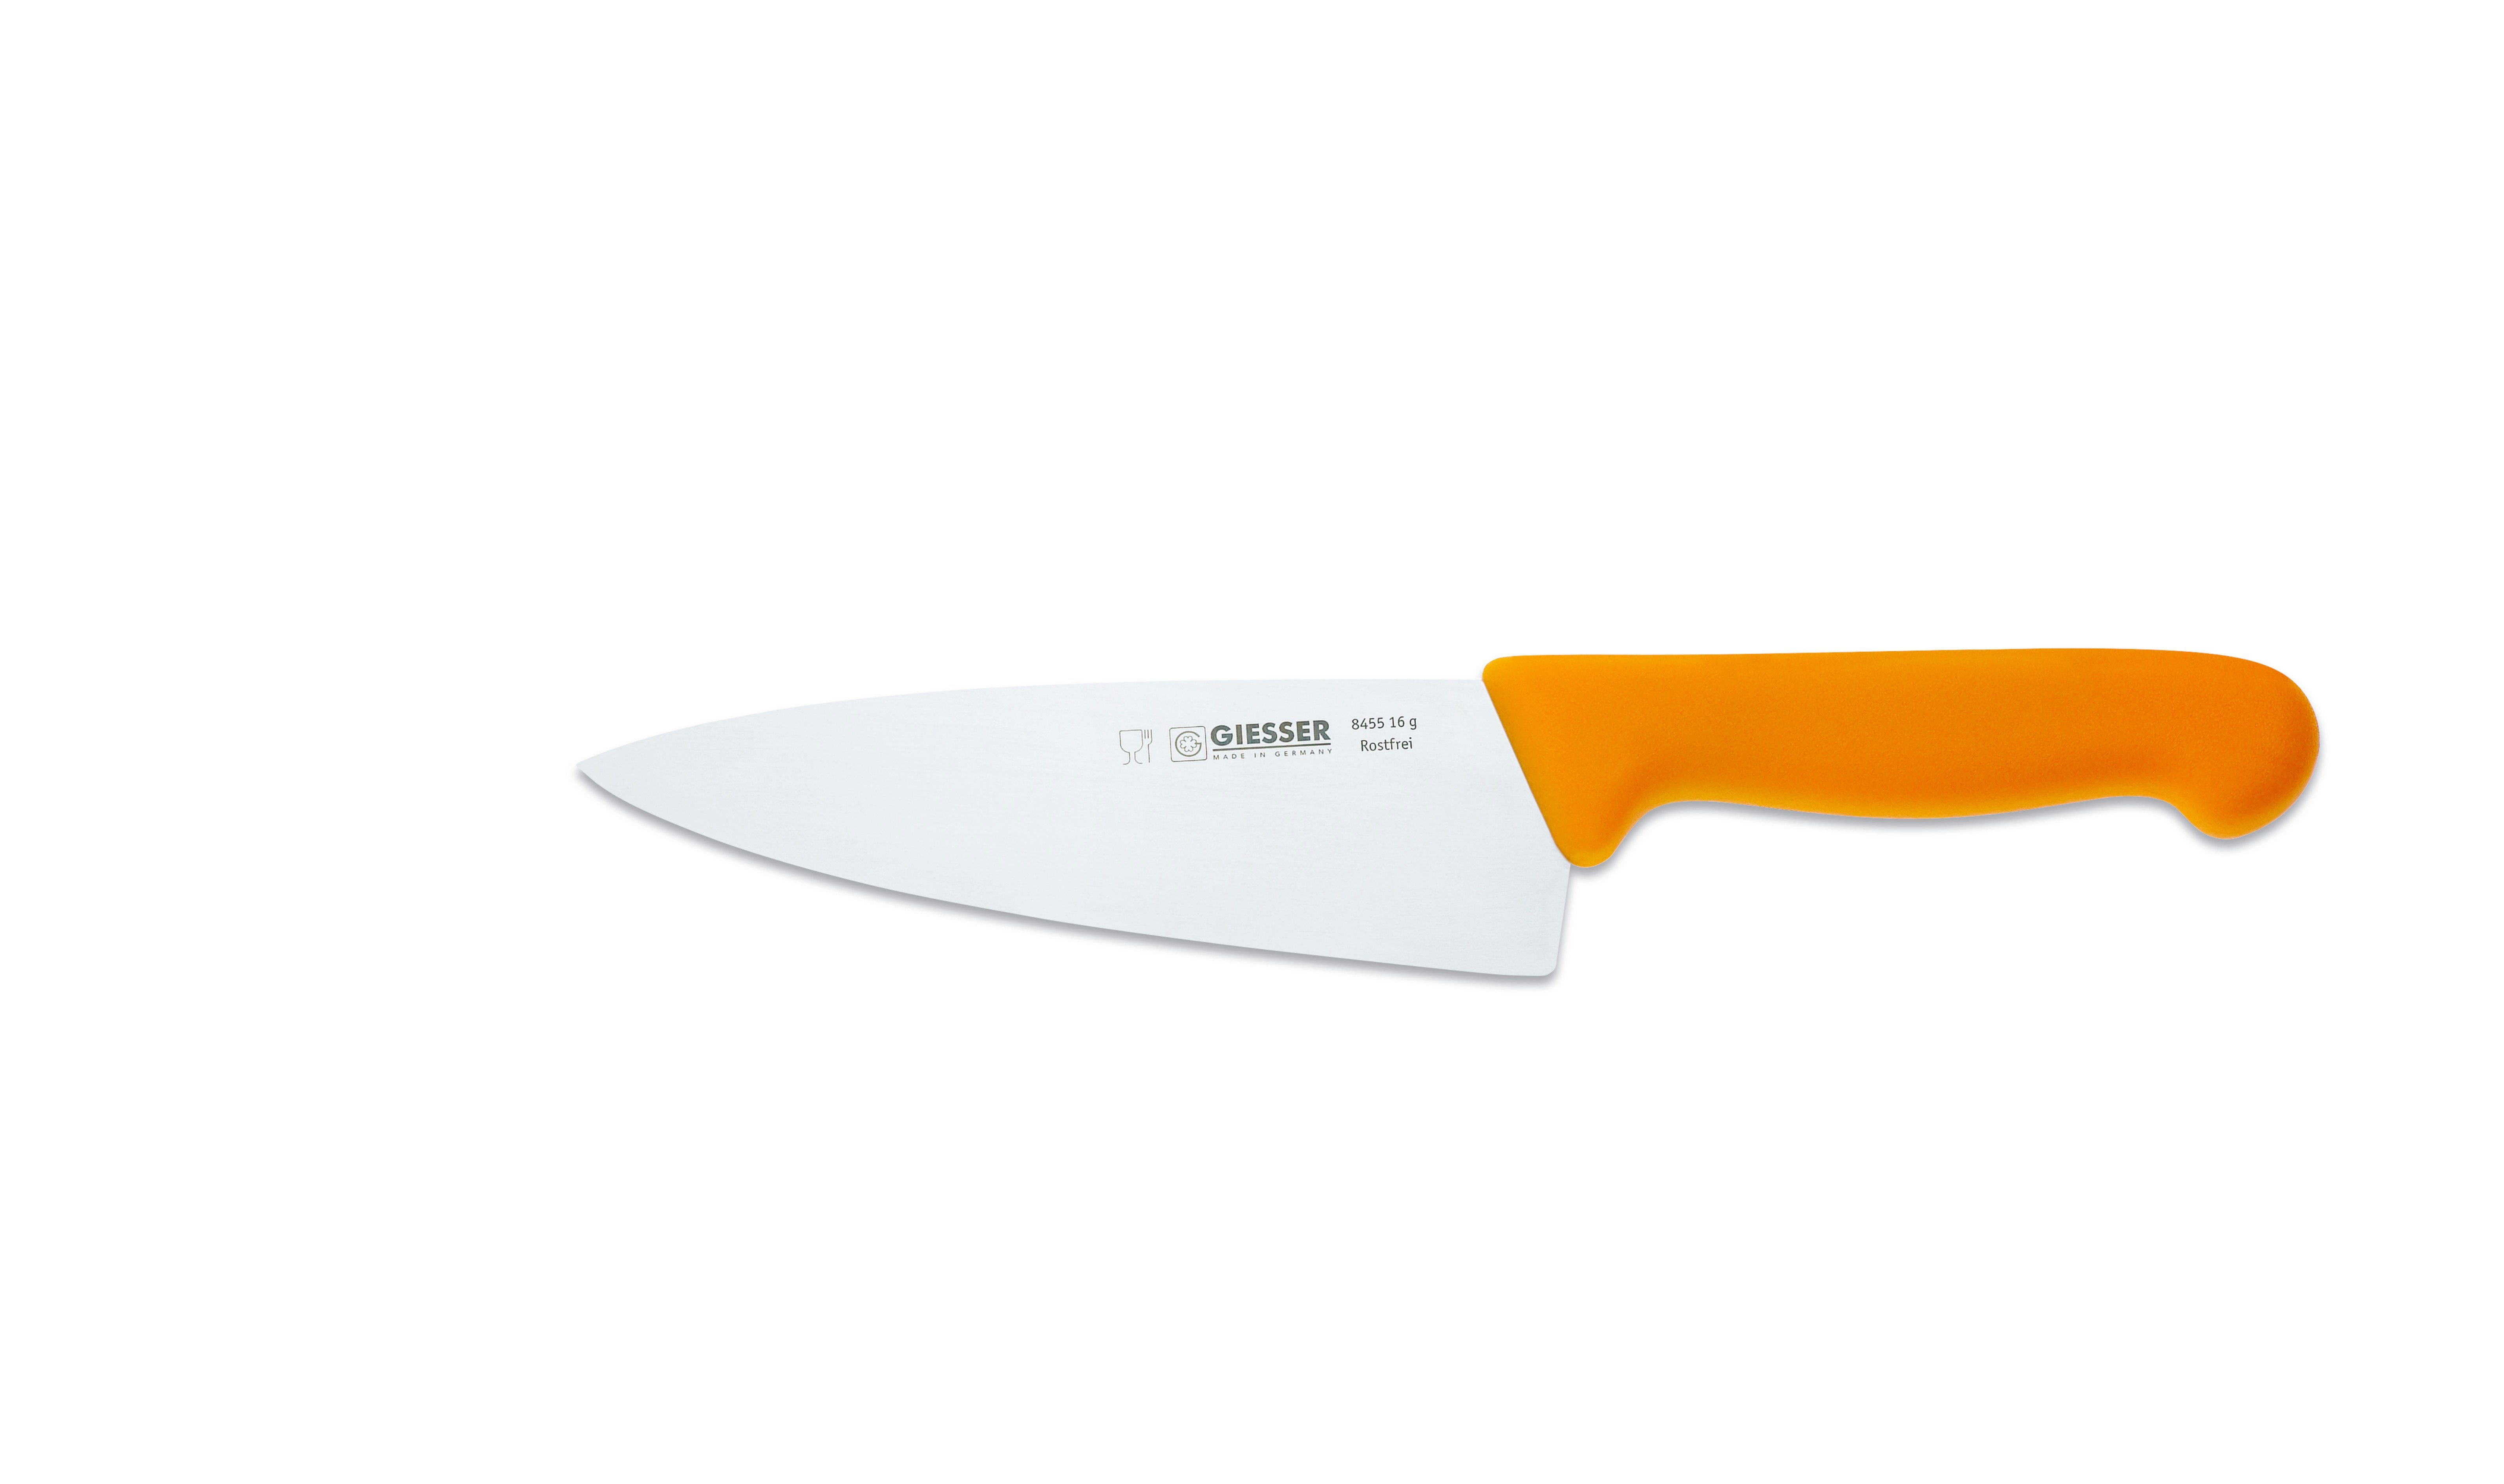 Giesser Messer Kochmesser Küchenmesser breit 8455, Rostfrei, breite Form, scharf, Handabzug, Ideal für jede Küche